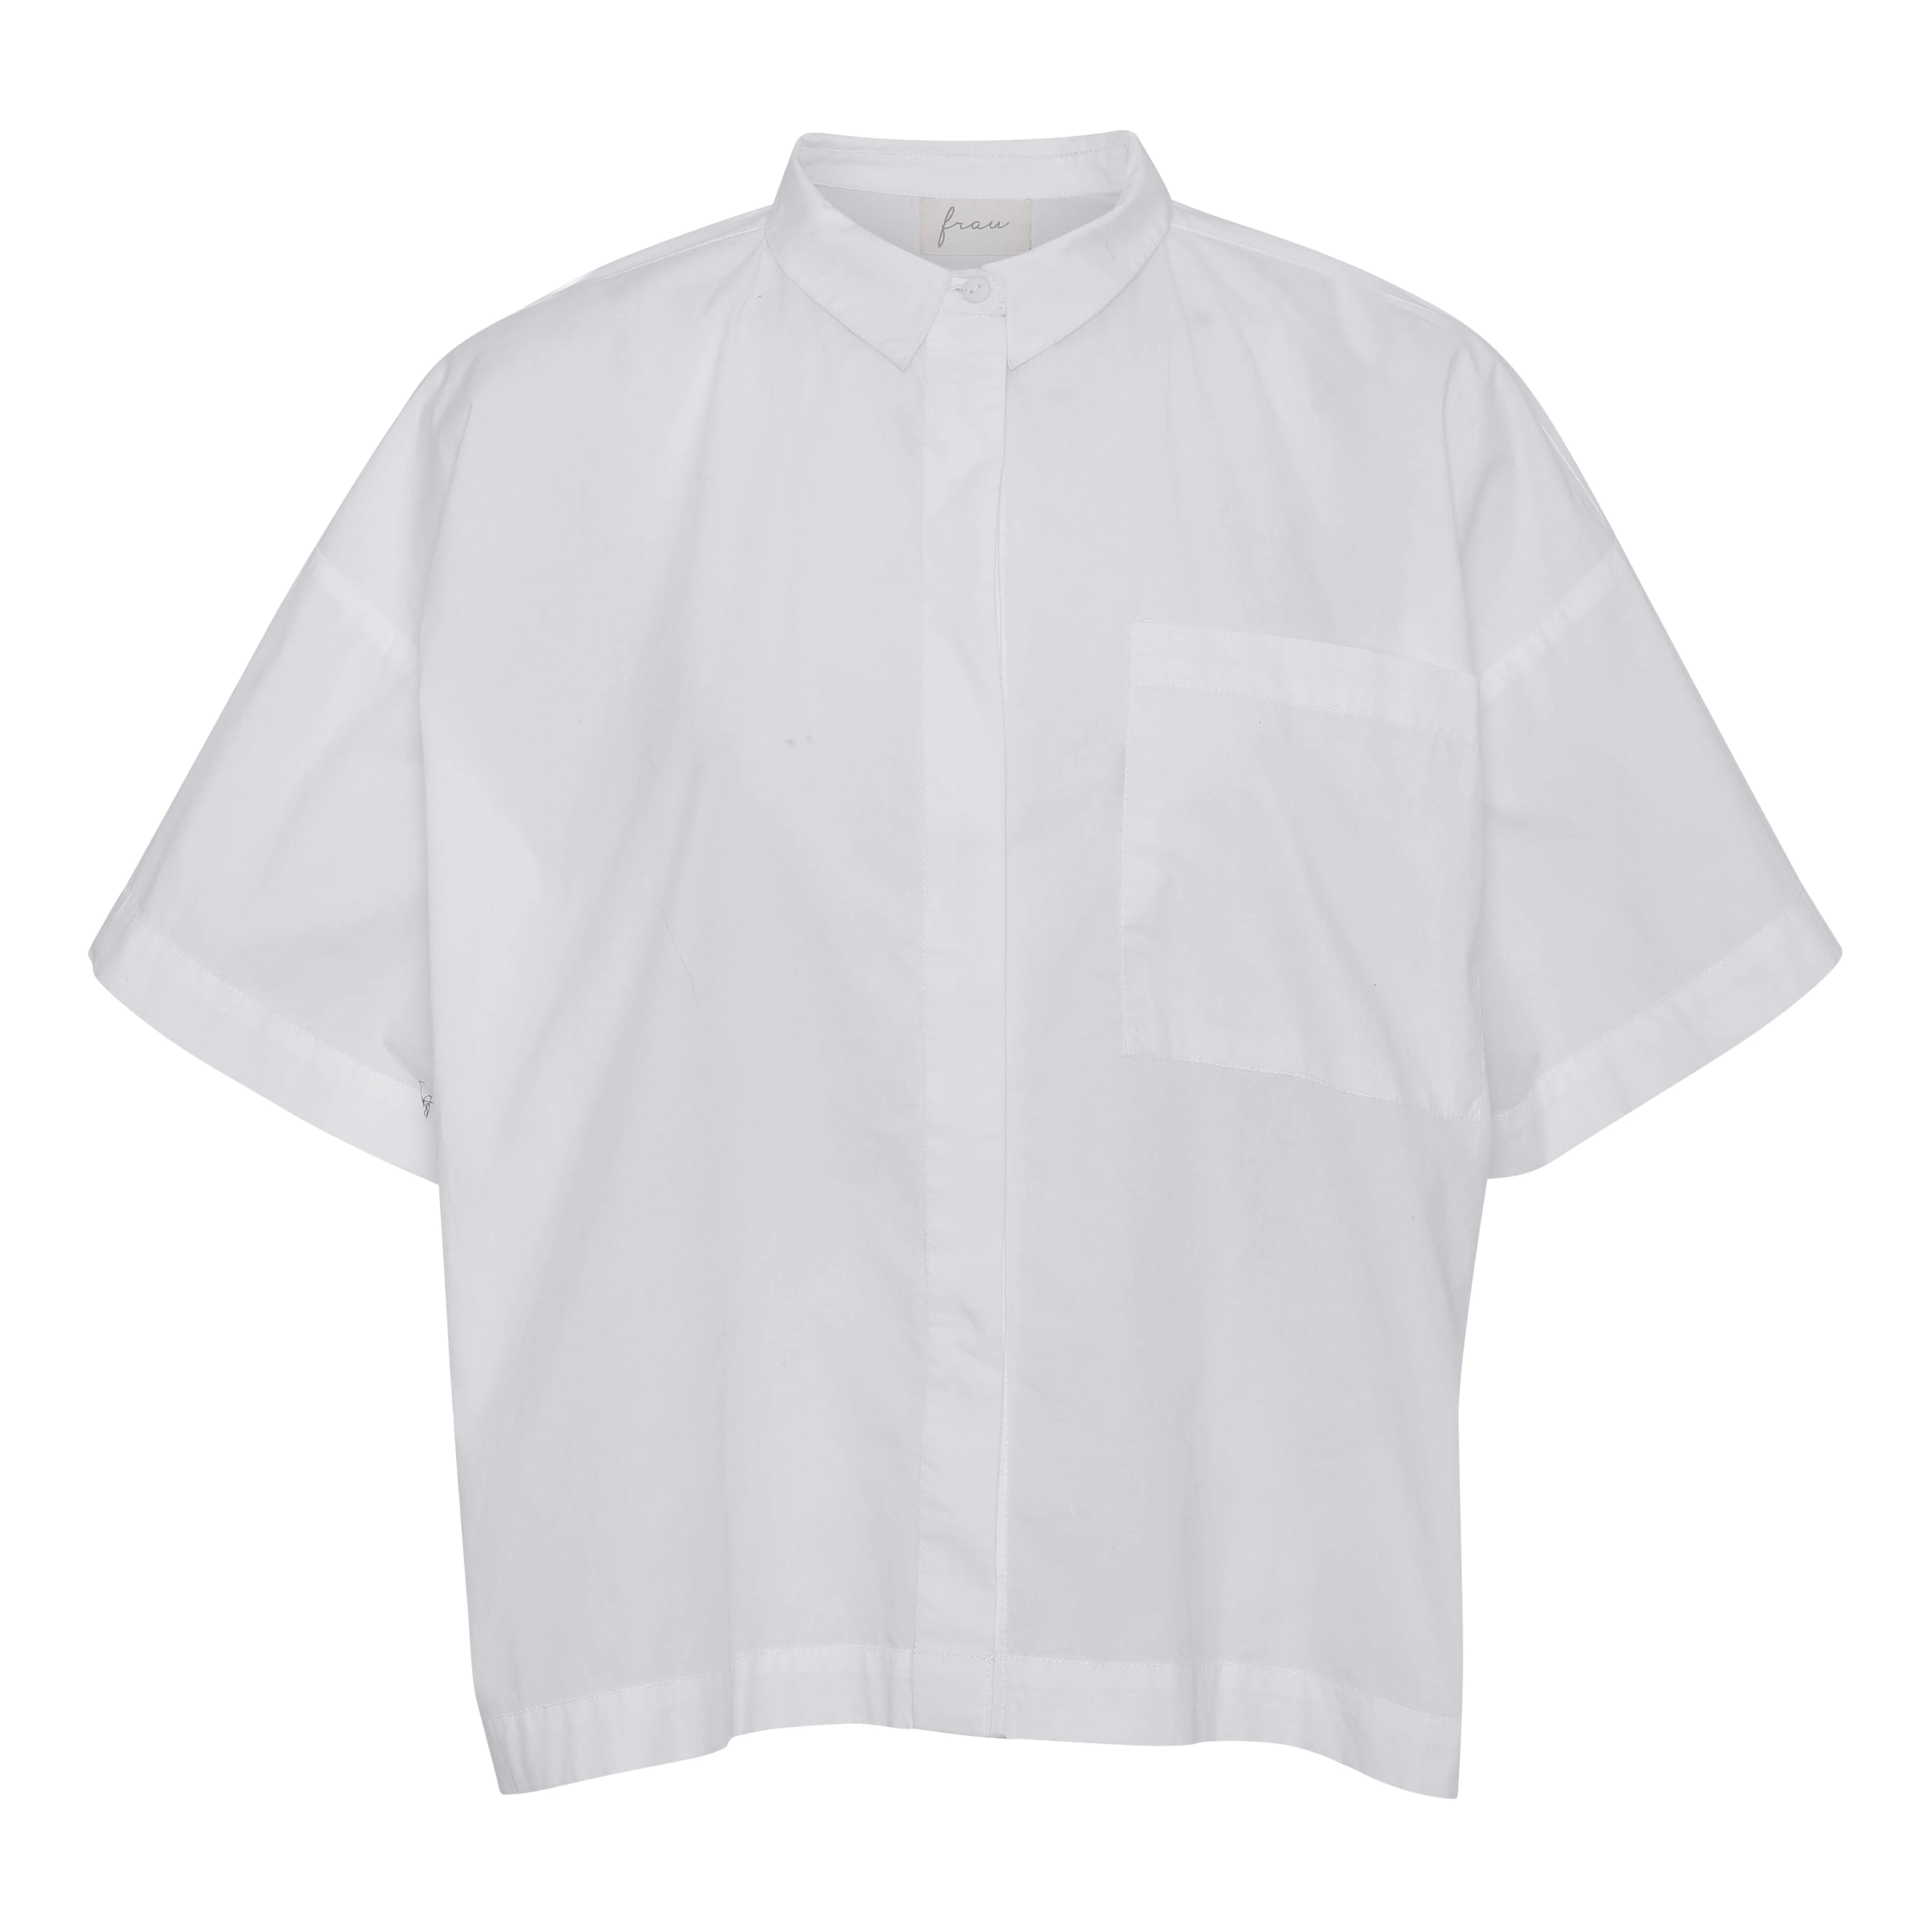 Frau Nice SS Shirt - Bright White